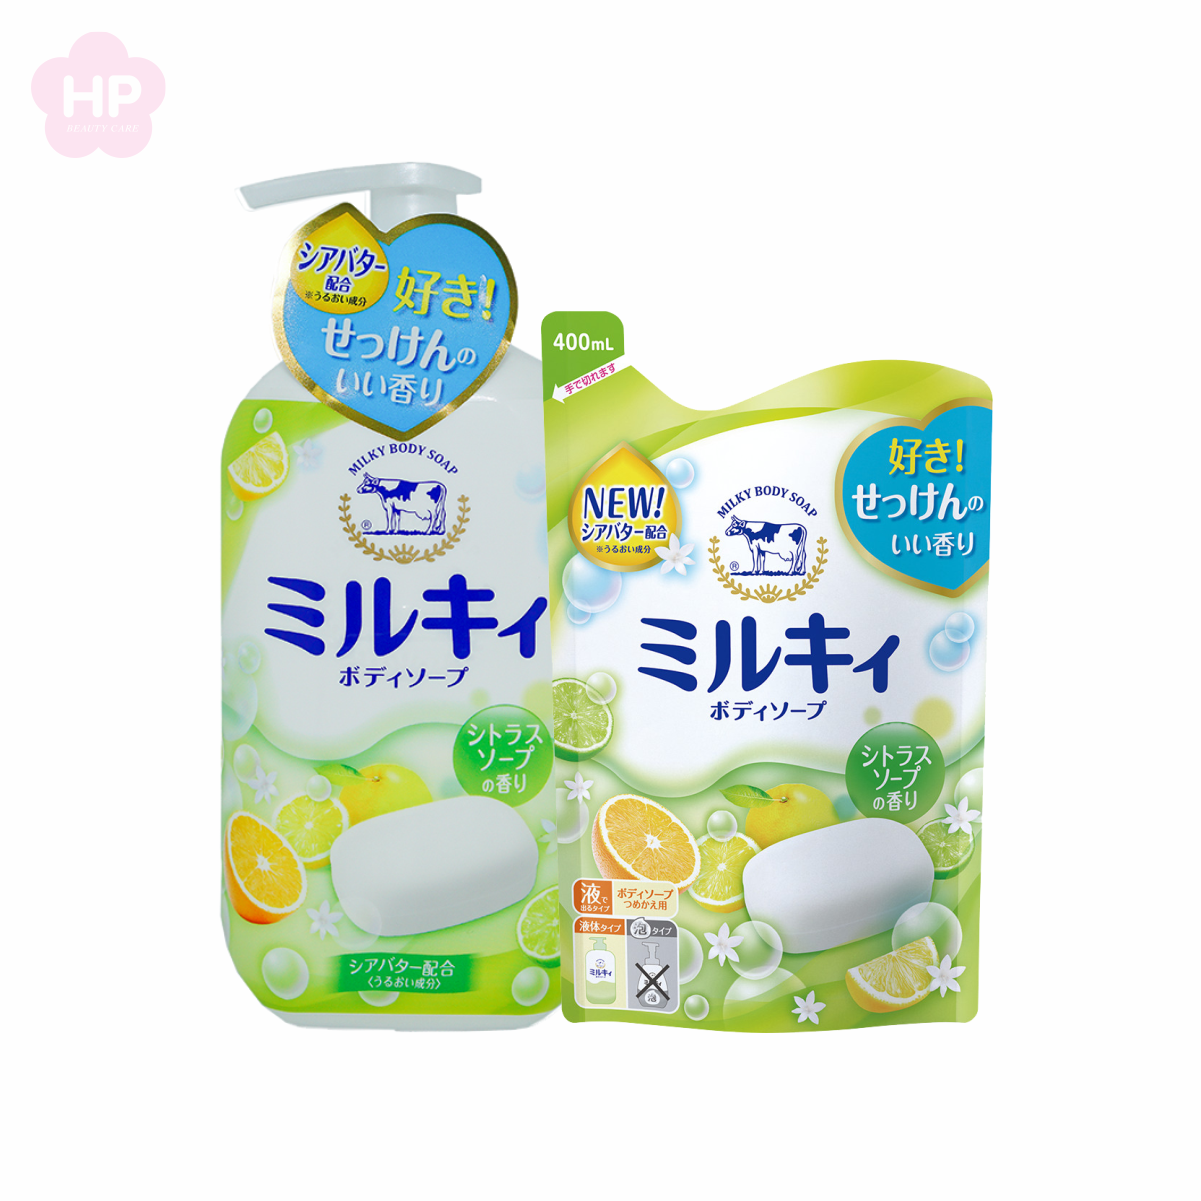 Sữa Tắm Cow Milky Body Soap Citrus Pump Dưỡng Trắng Mịn Da Hương Cam Chanh (Chai 550 ml)